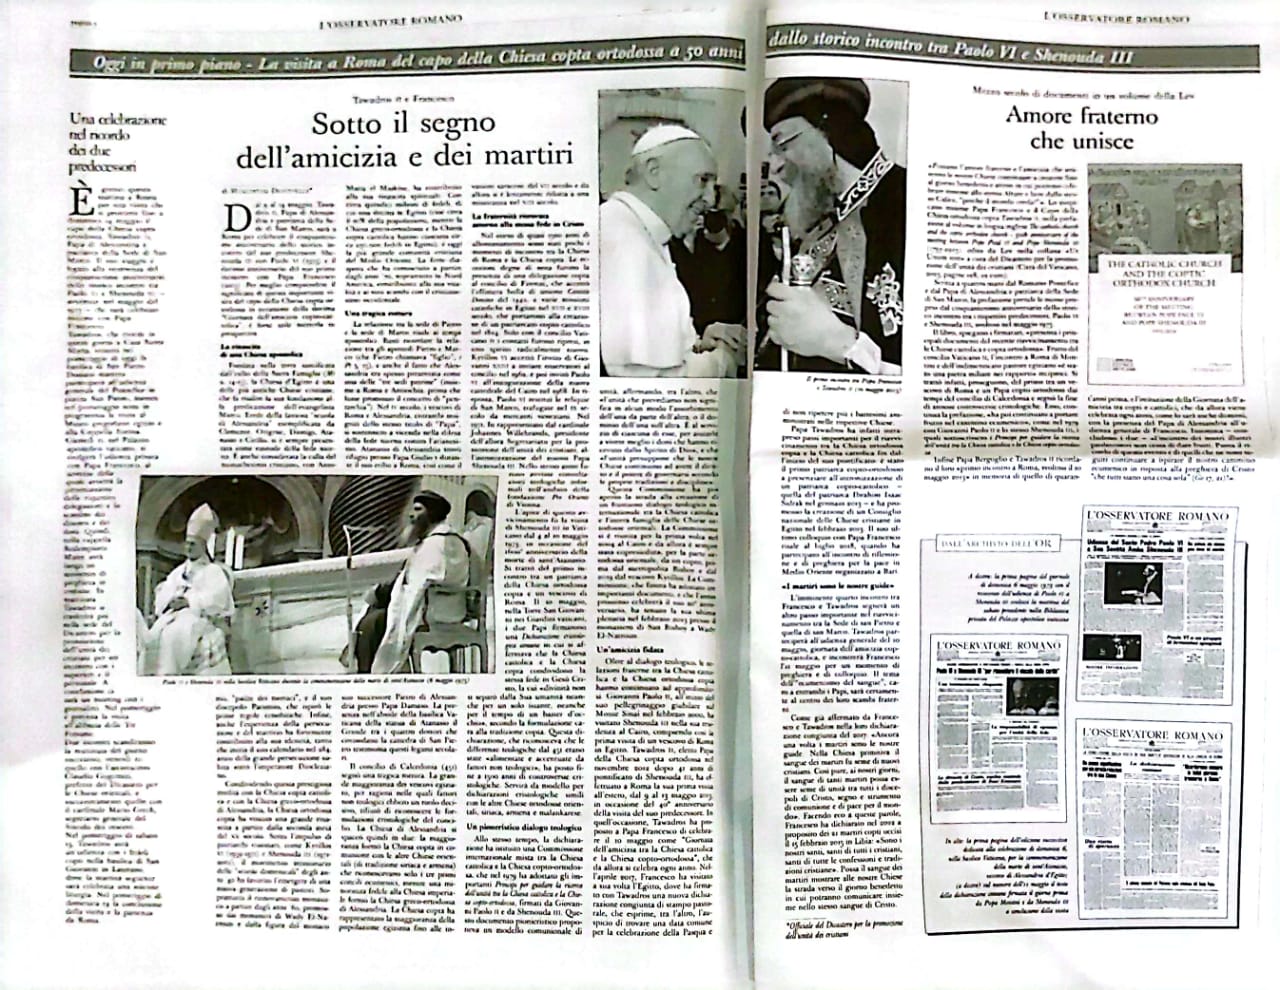 تغطية صحف الفاتيكان للزيارة